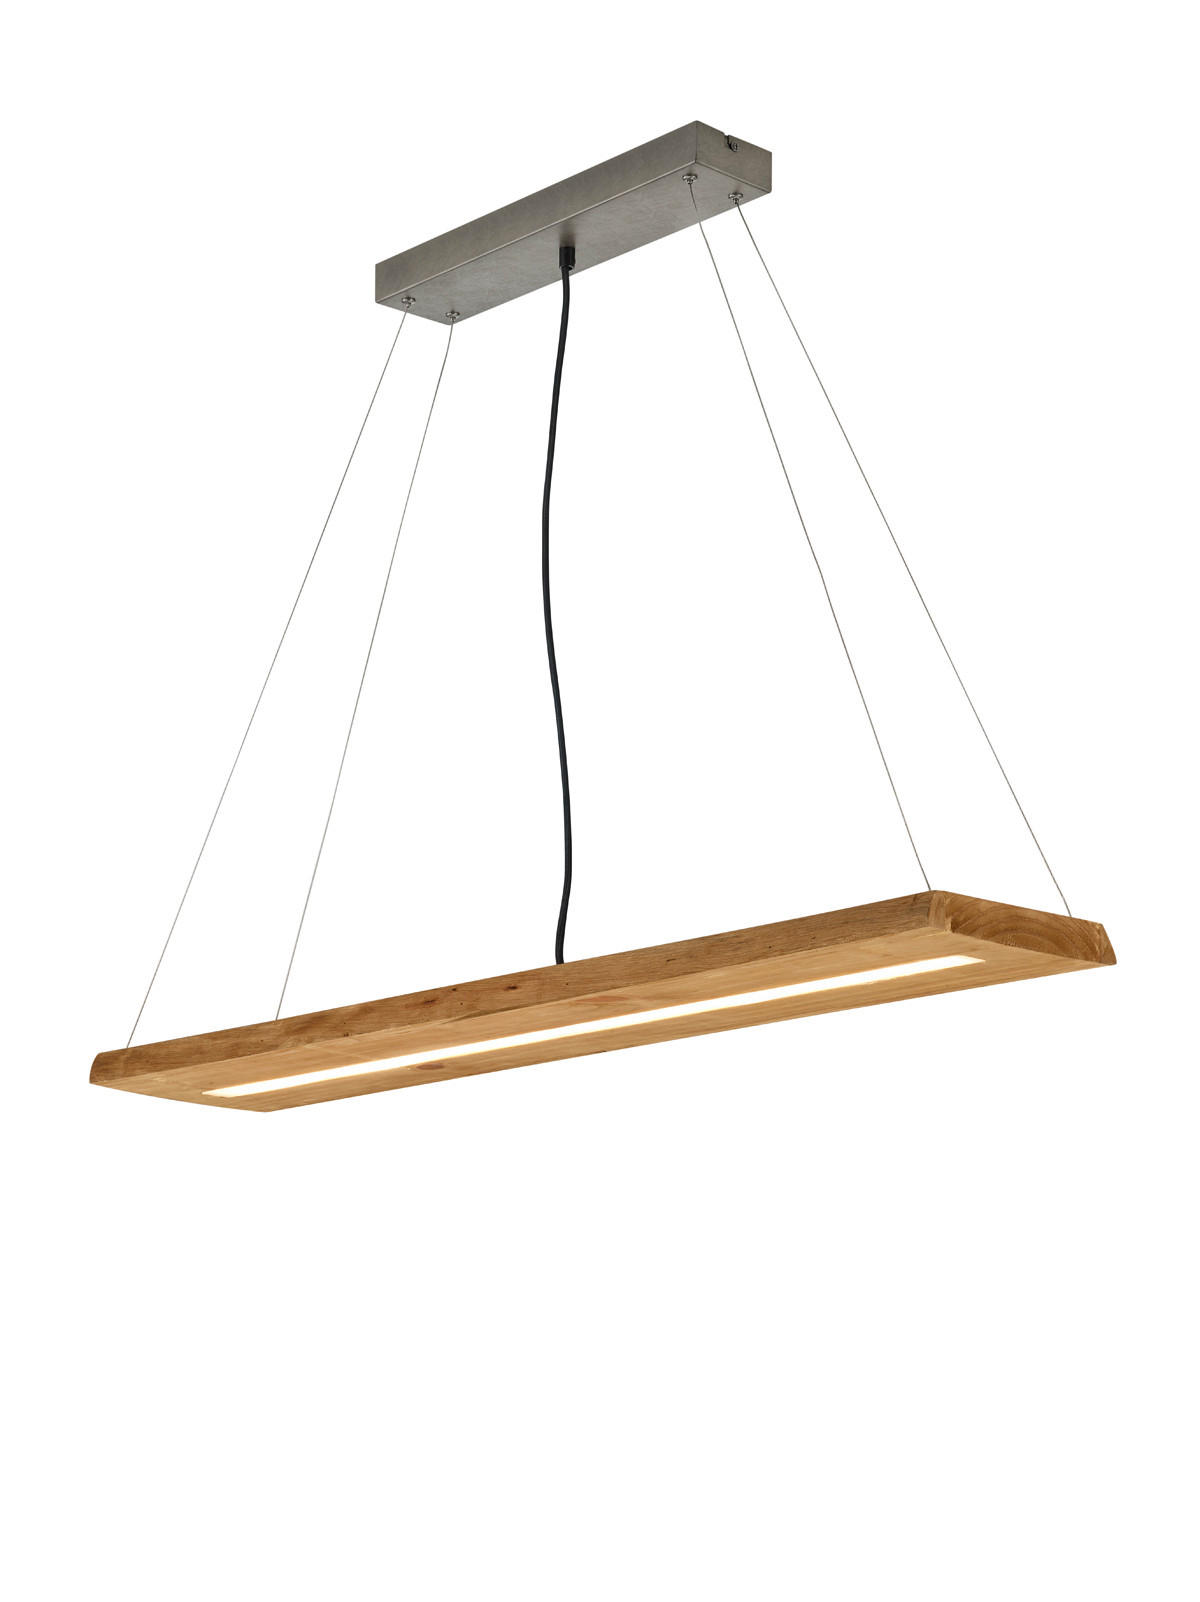 LED-HÄNGELEUCHTE BRAD  - Nickelfarben, Design, Holz/Metall (100/150/20cm) - Trio Leuchten